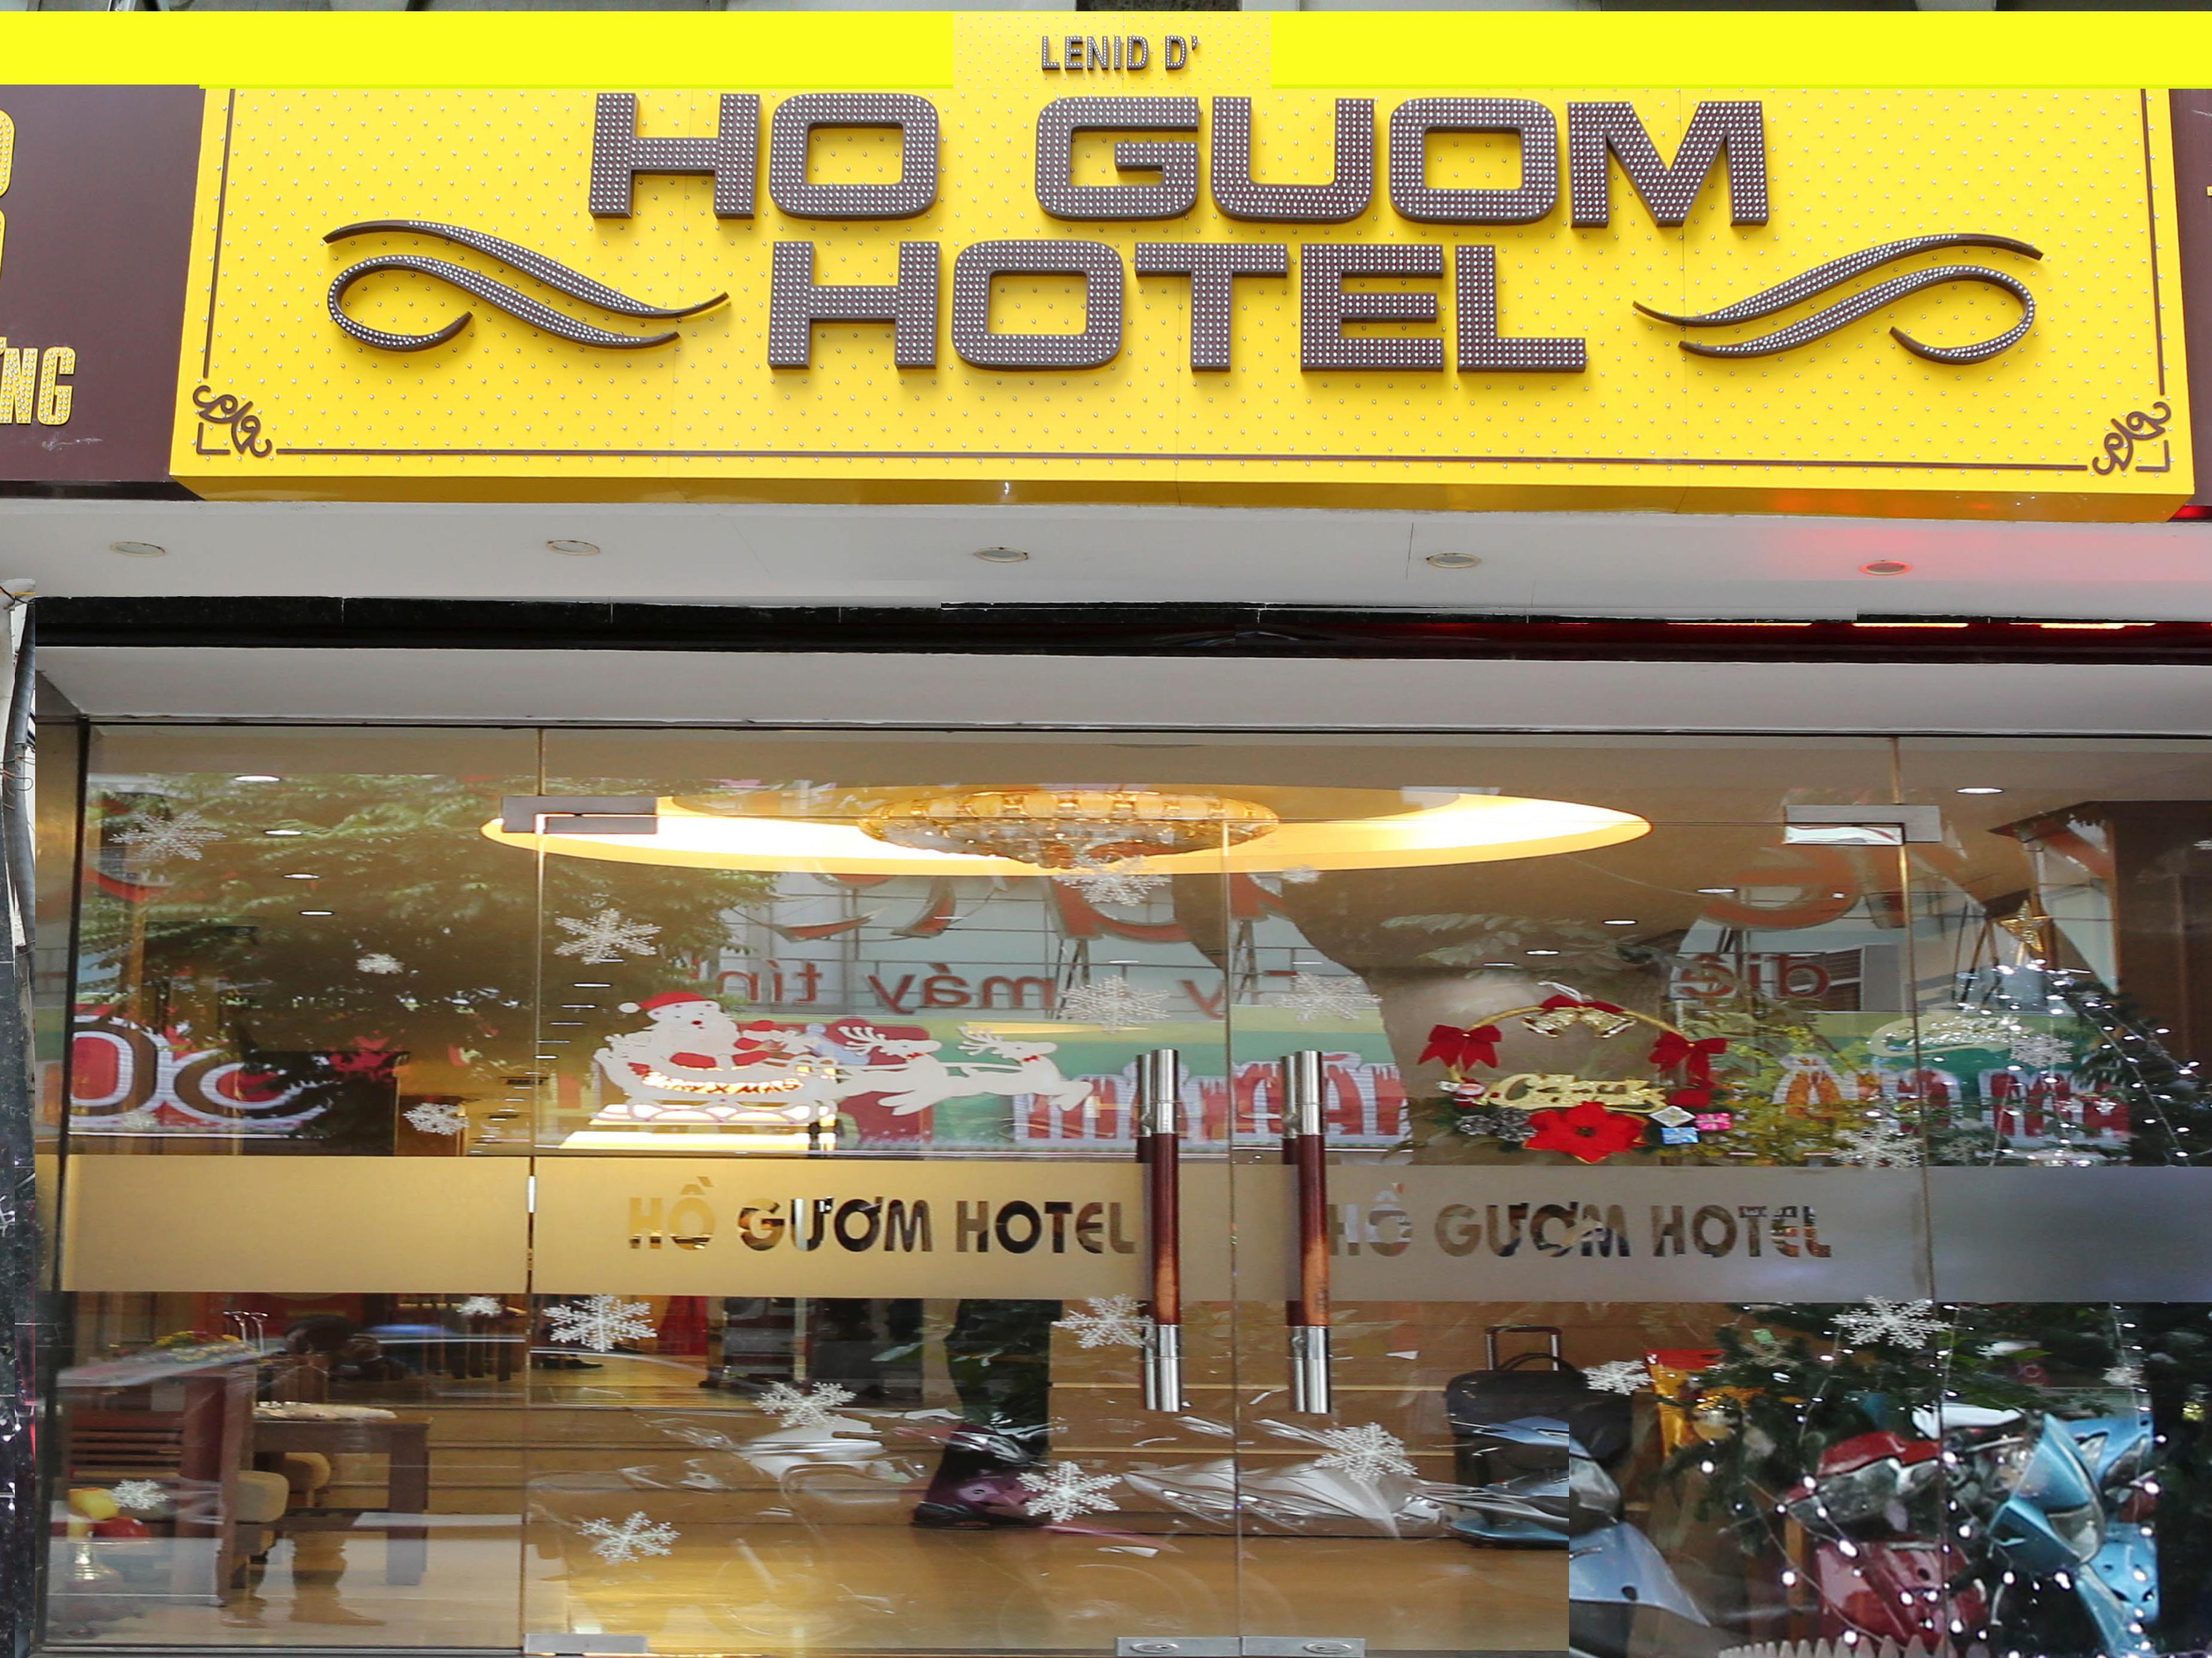 Ho Guom Hotel - Hotell och Boende i Vietnam , Hanoi